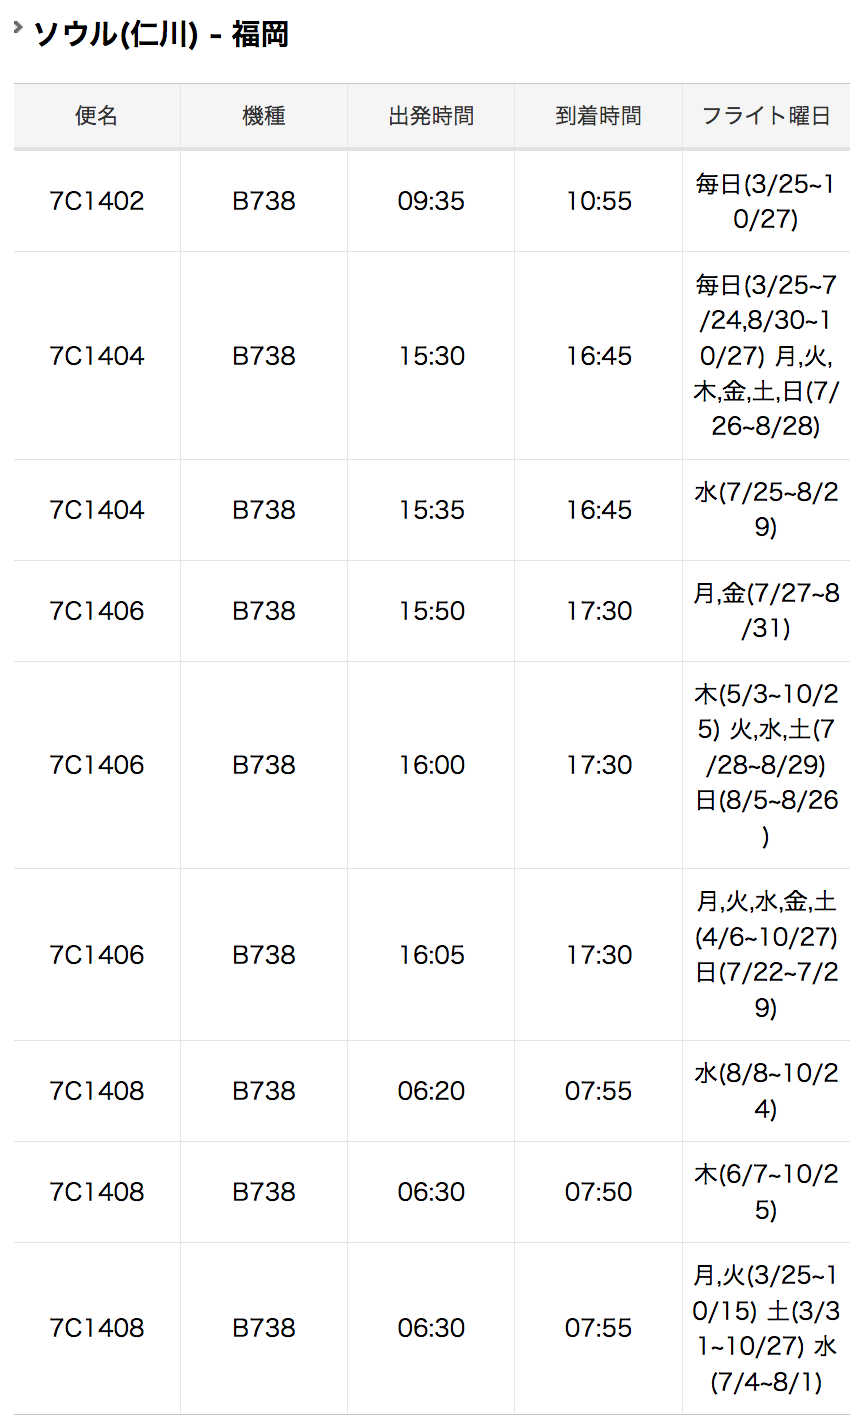 福岡 福岡空港 韓国 ソウル 仁川国際空港 路線の時刻表 旅するlcc